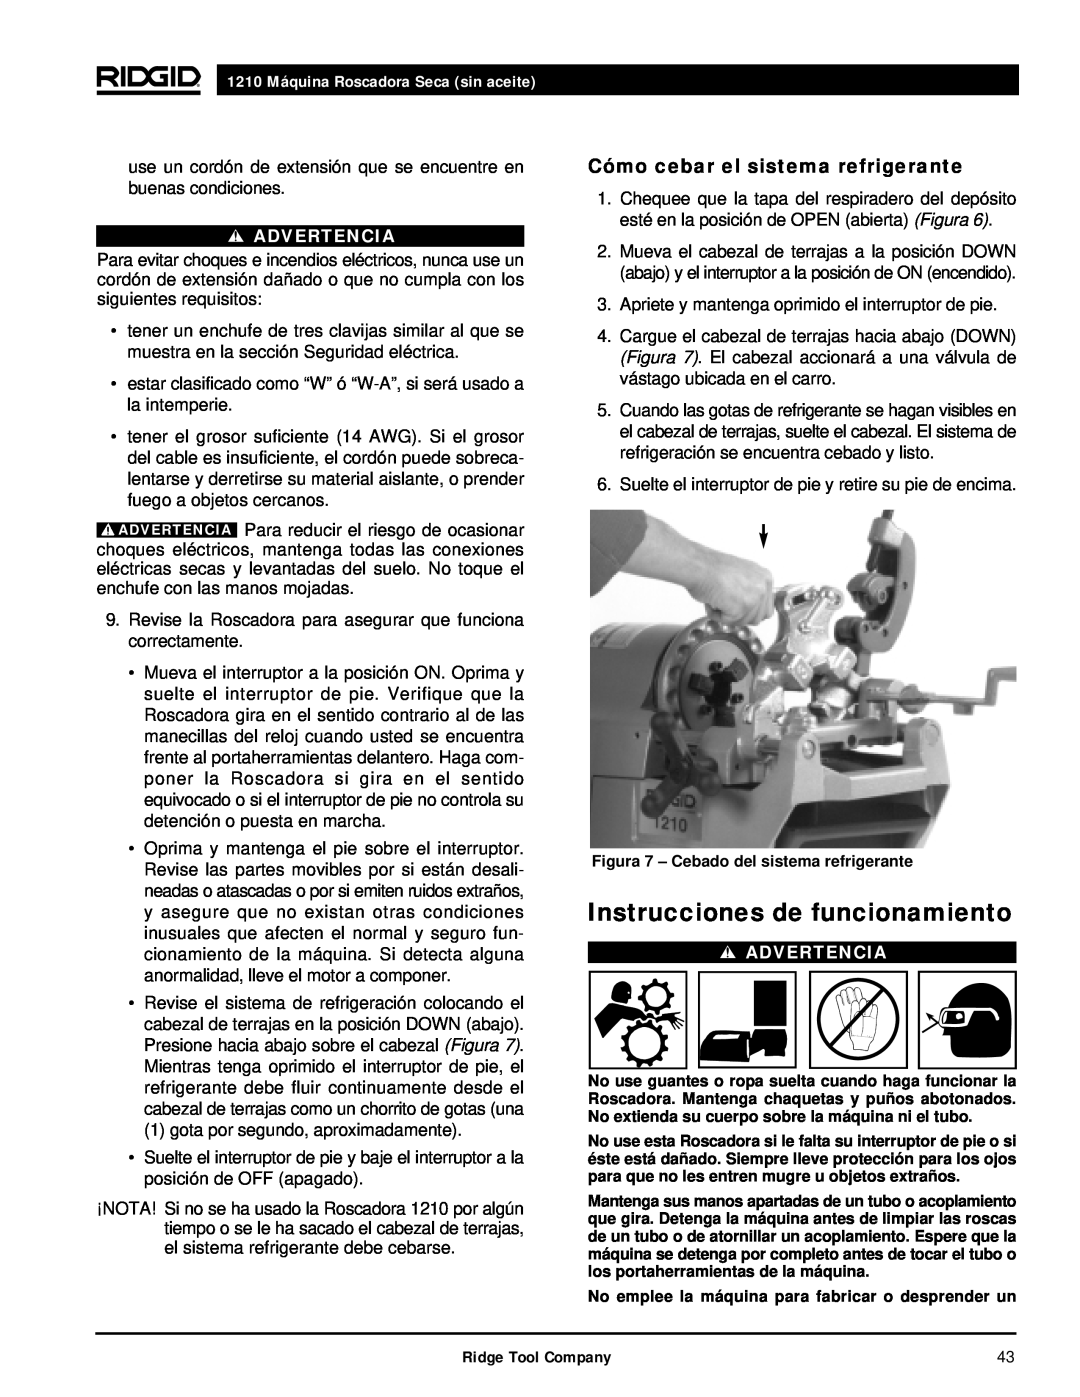 RIDGID Instrucciones de funcionamiento, Cómo cebar el sistema refrigerante, 1210 Máquina Roscadora Seca sin aceite 